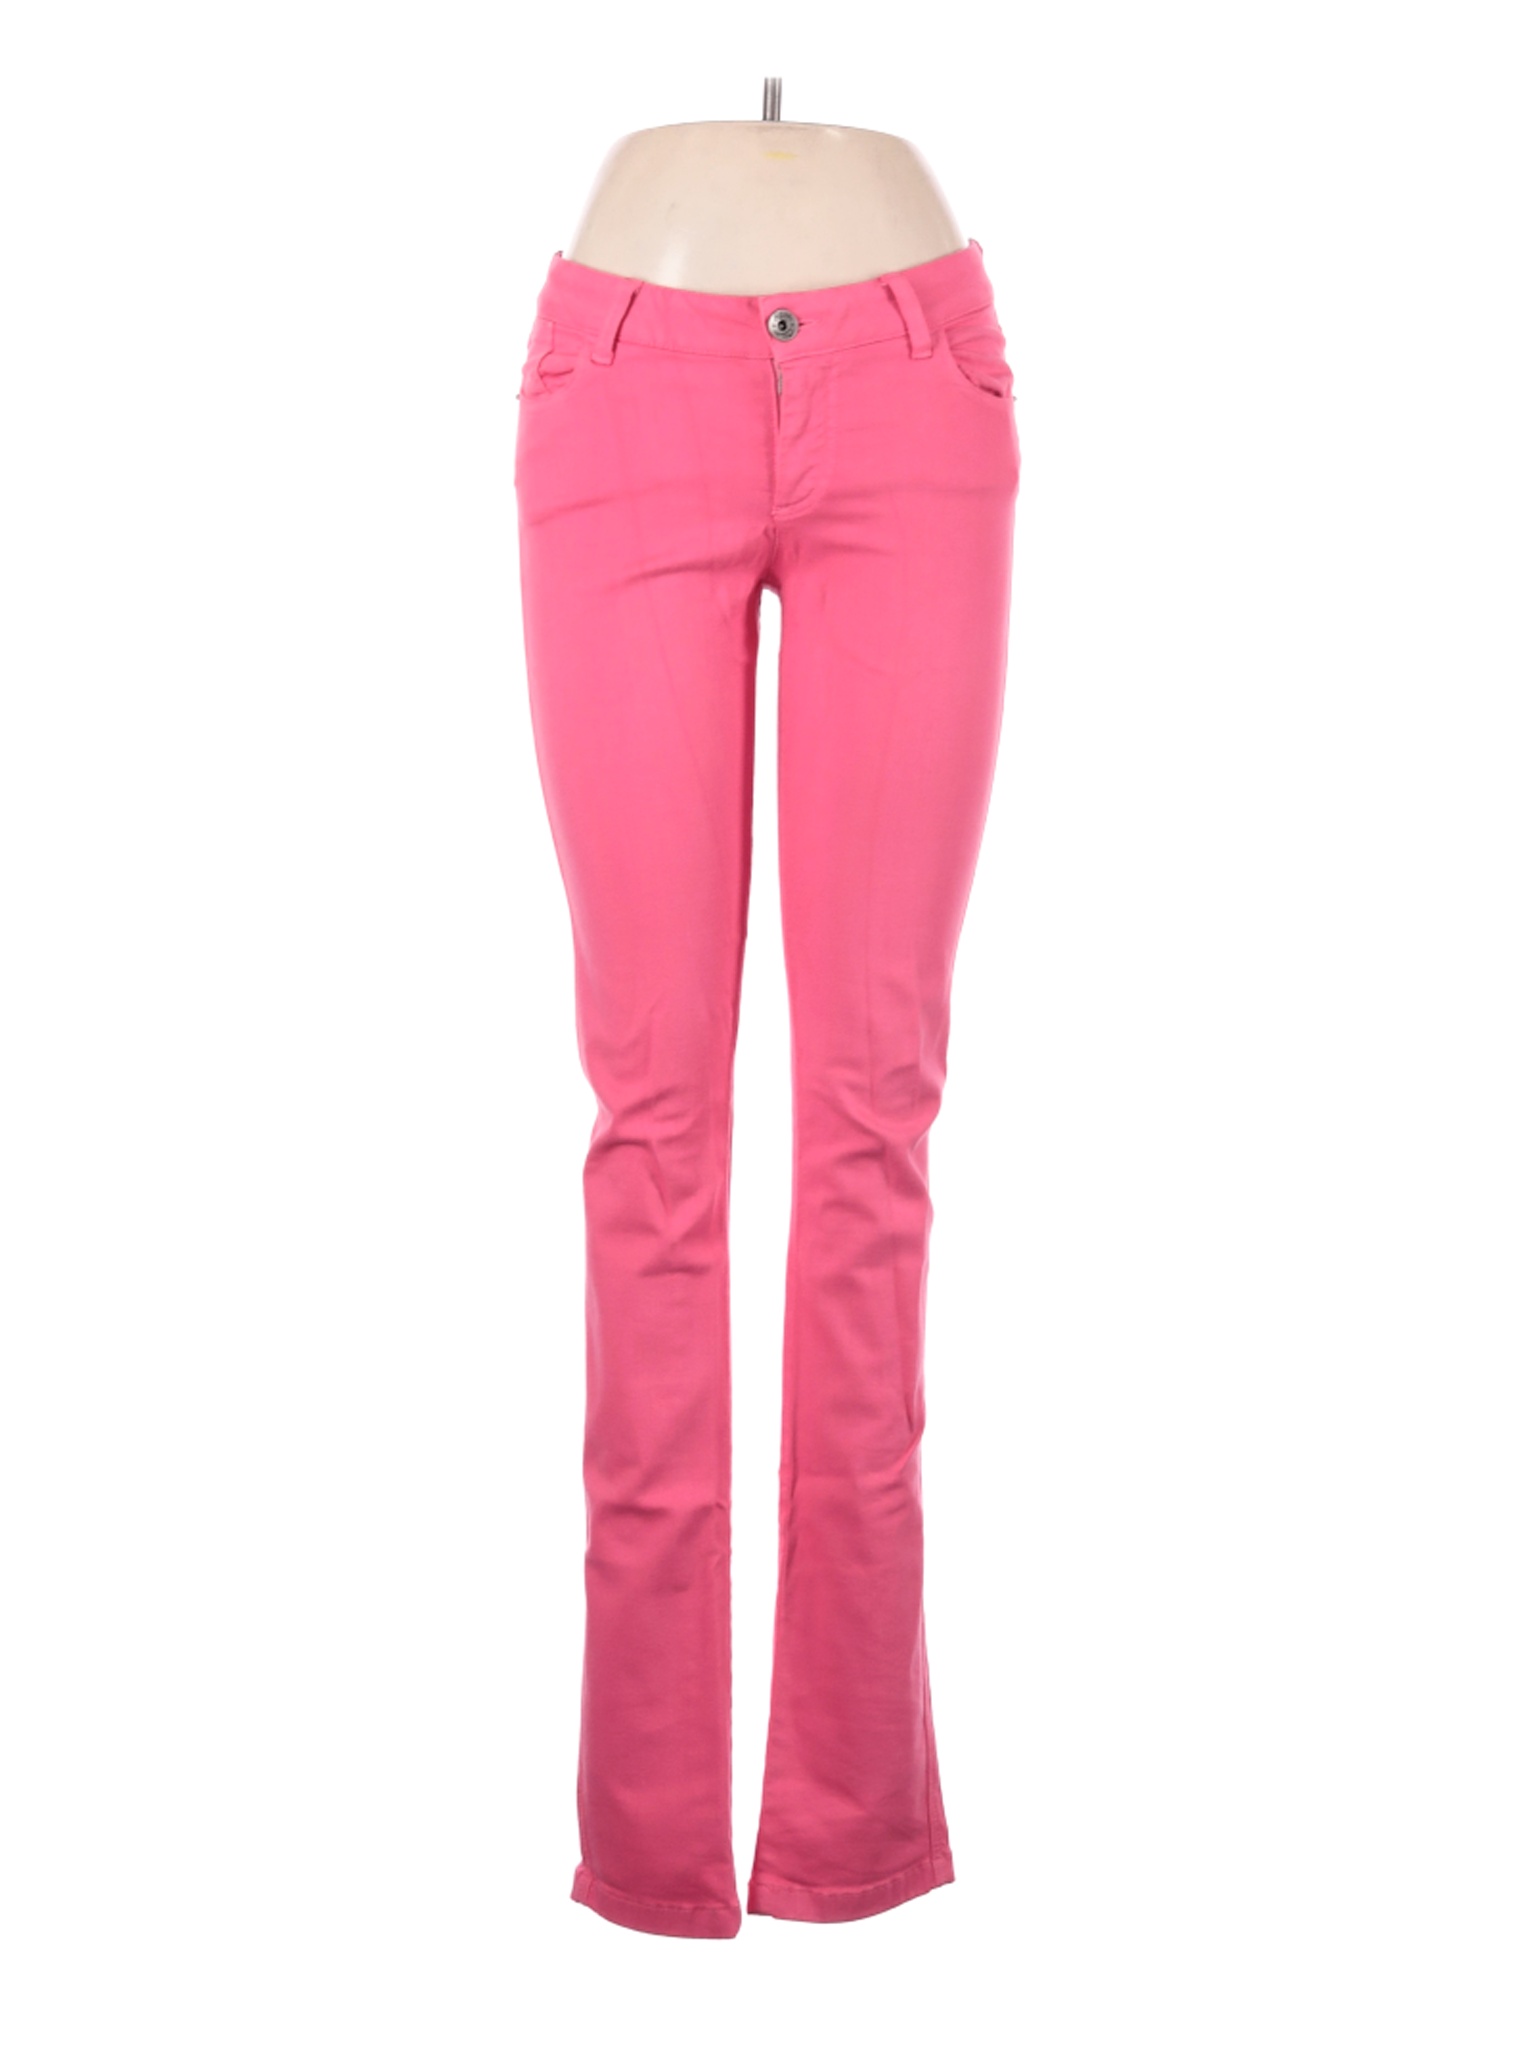 ALICE + OLIVIA JEANS Women Pink Jeans 6 | eBay